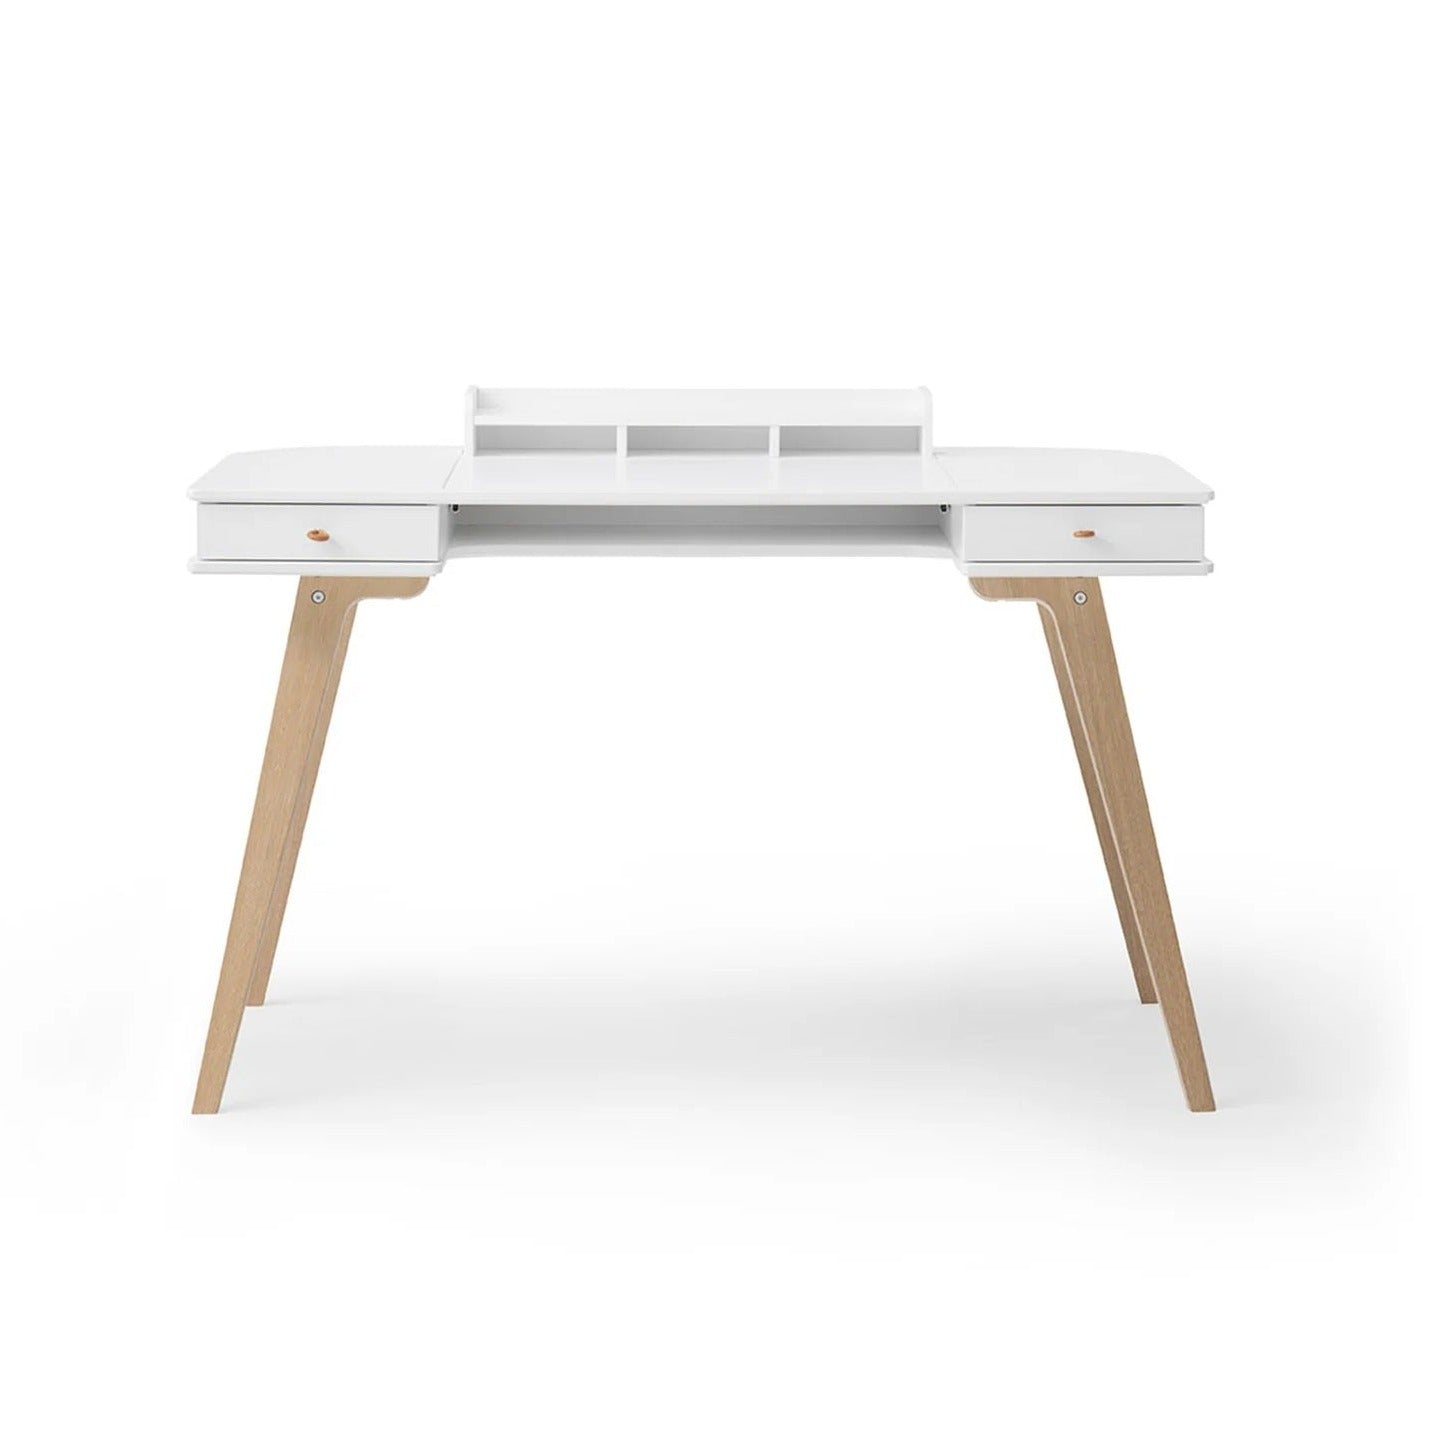 Oliver Furniture Wood Desk & Chair - 72.6cm